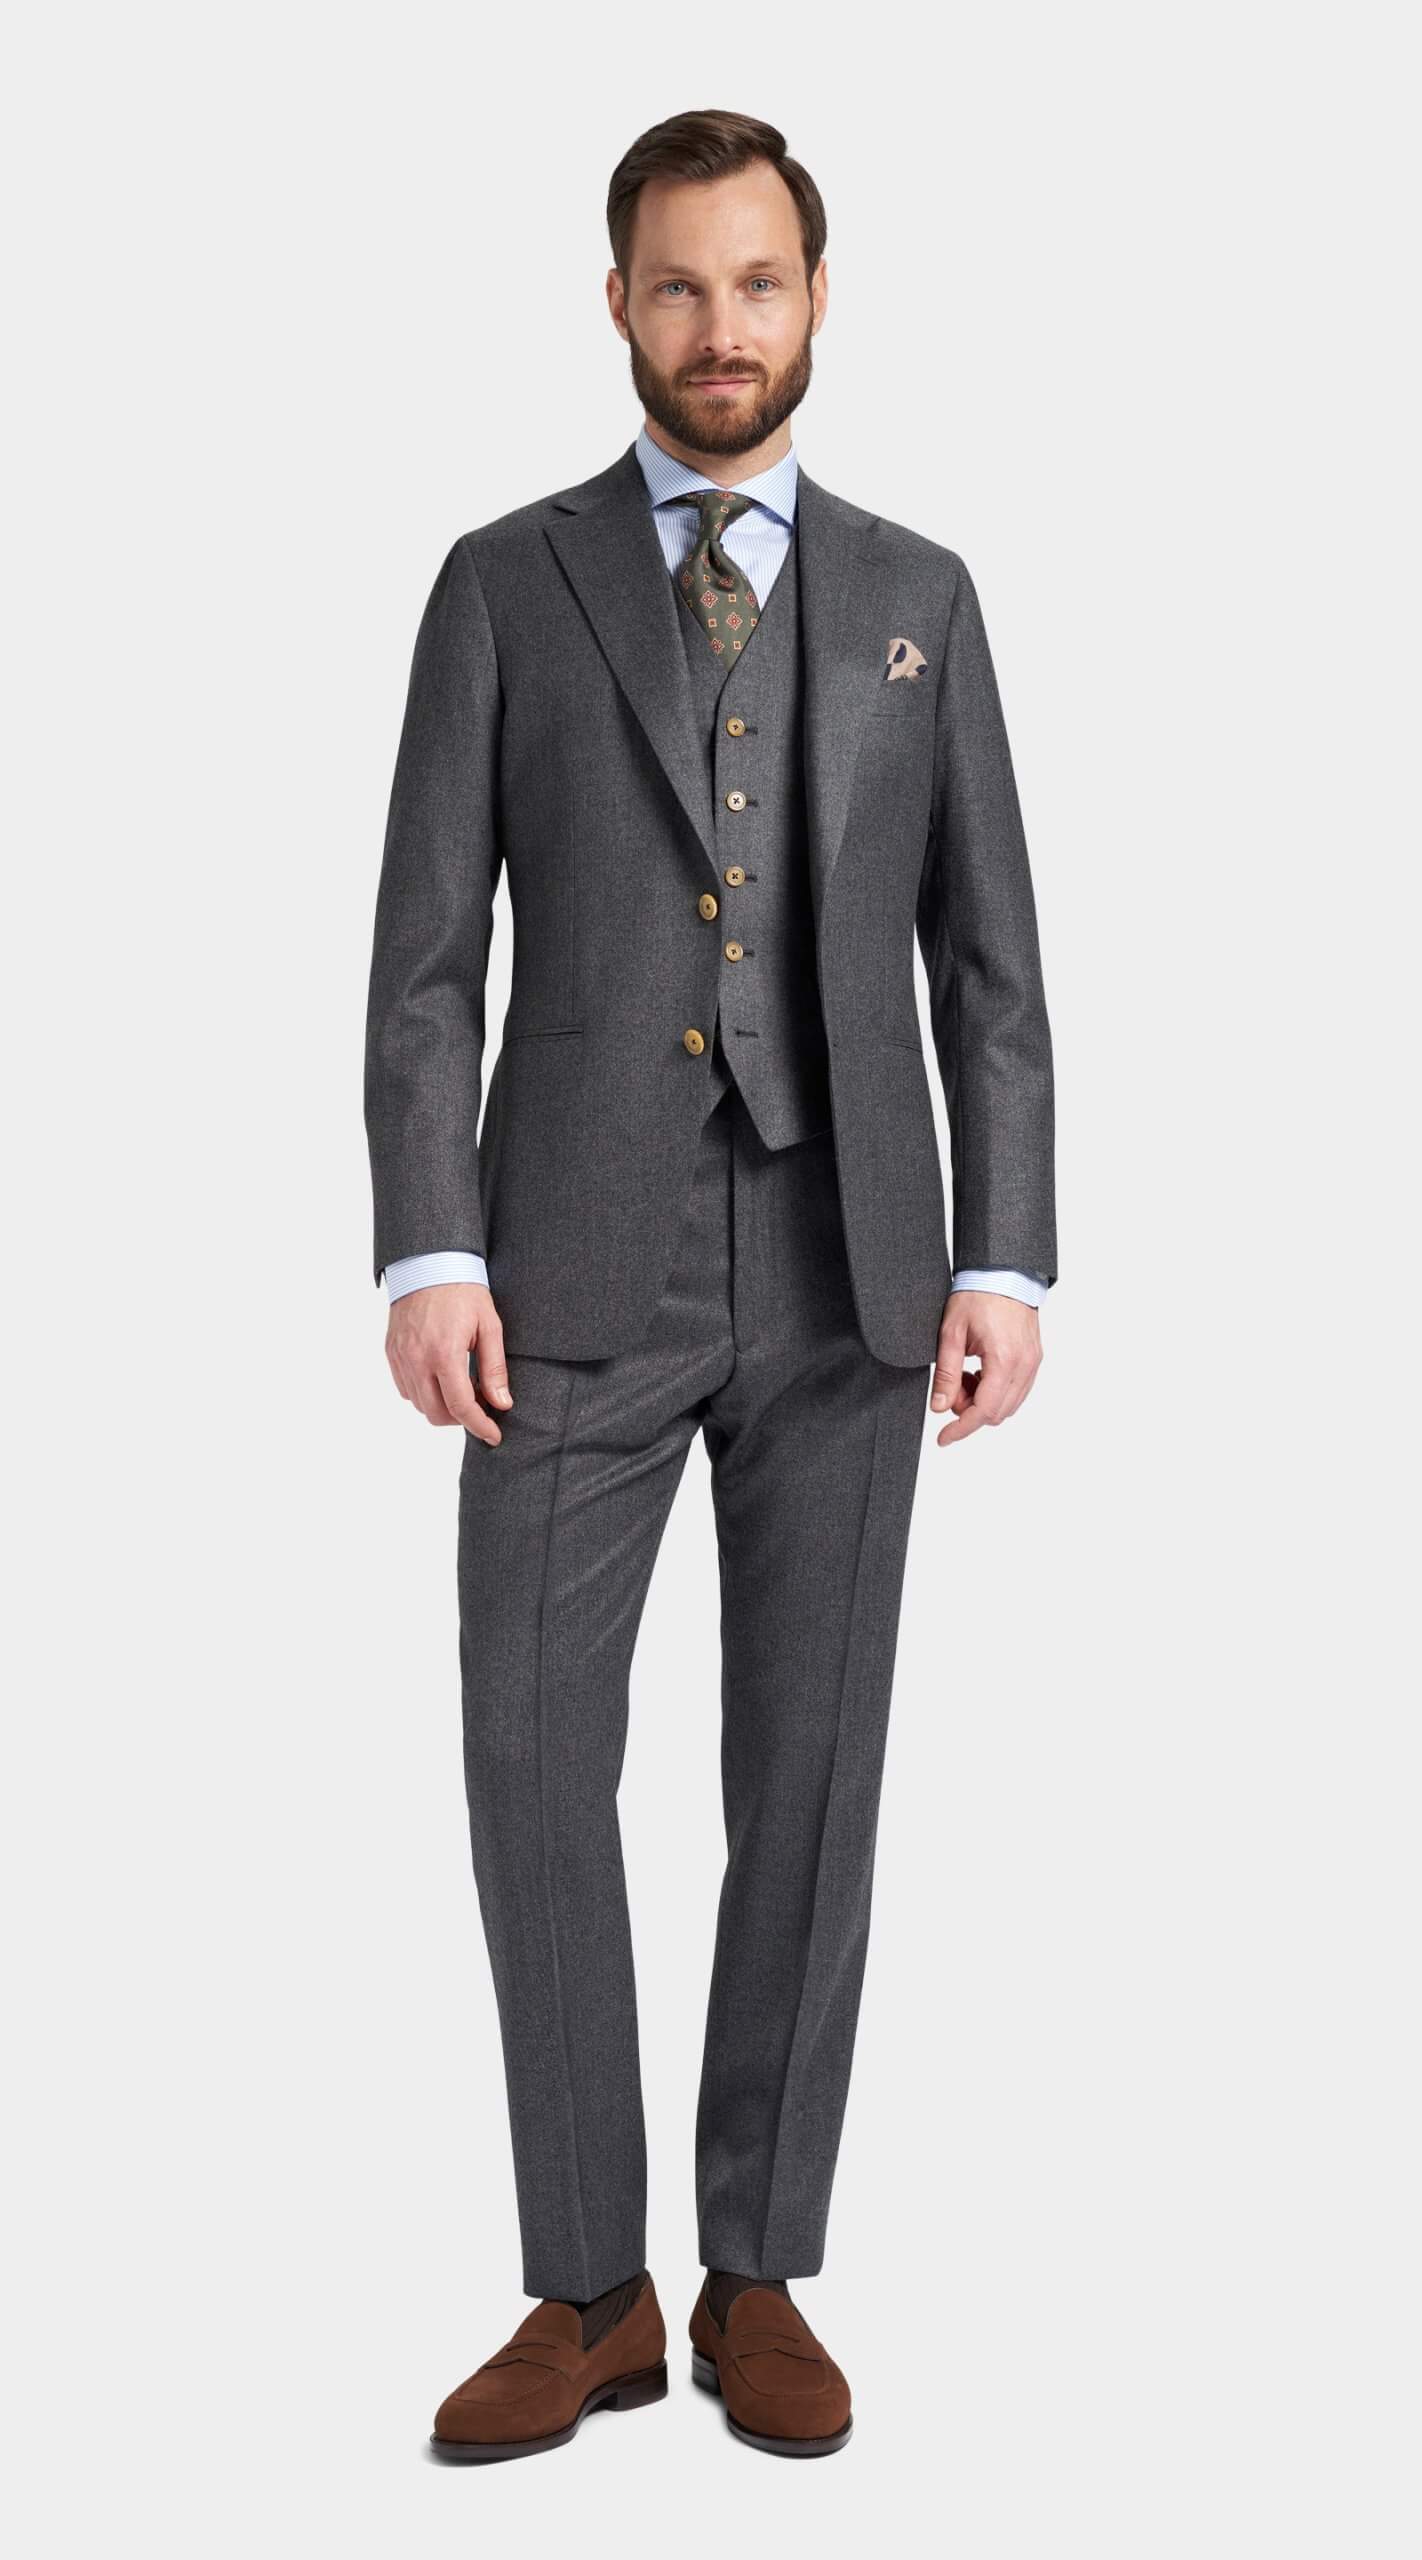 Gray Flannel Suit / Grå jakkesæt i flannel / Grauer Flanell-Anzug / Grå dress i flanell